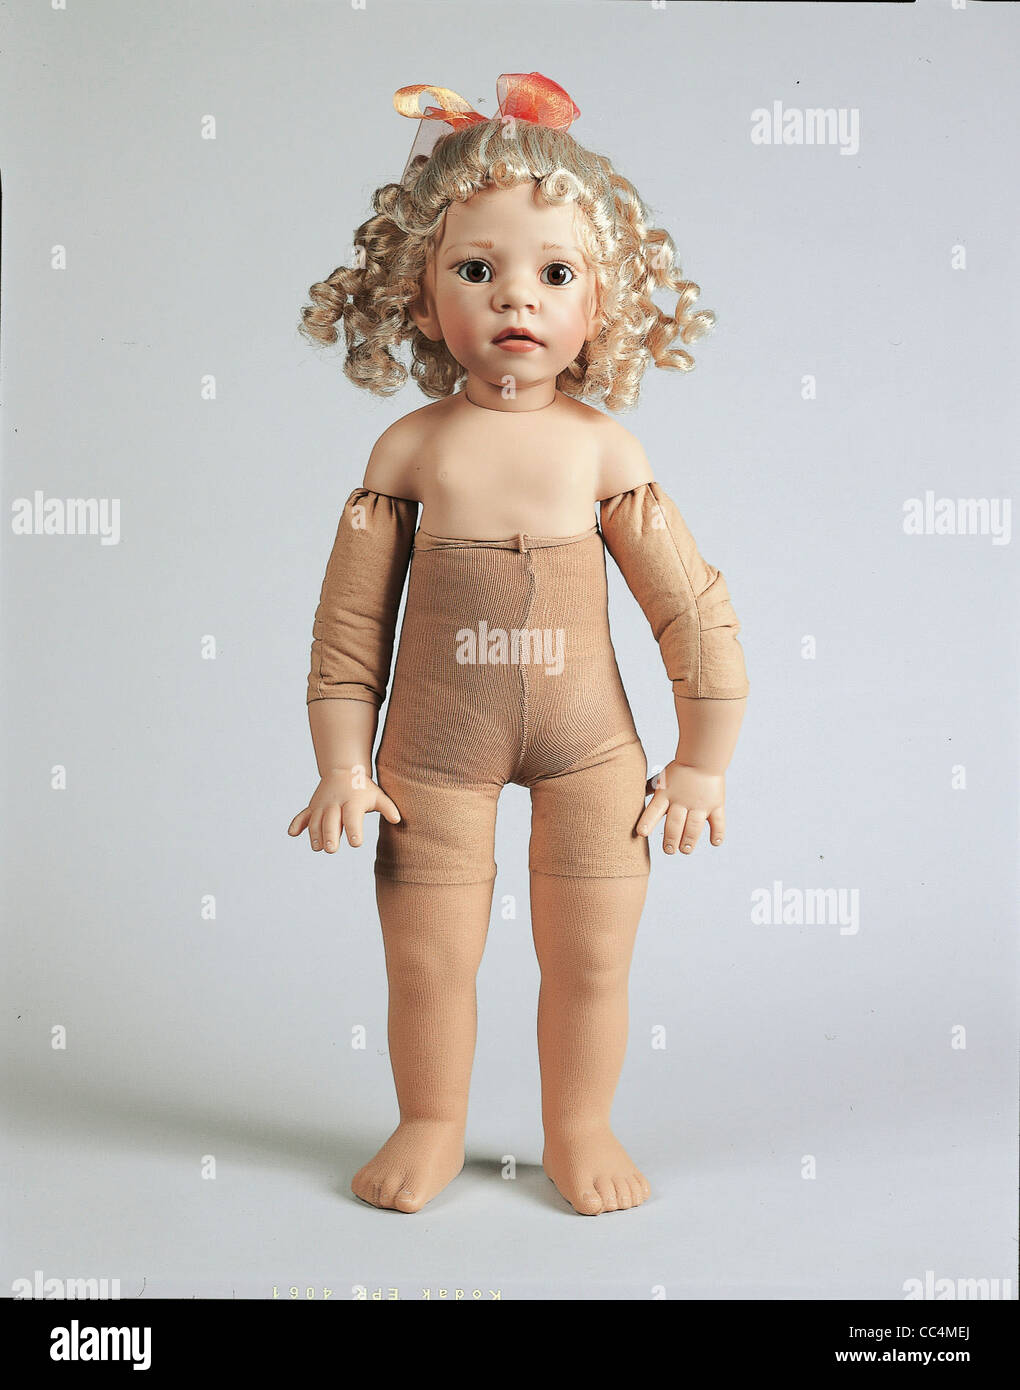 Dolls doll collectors designer elisabeth lindner lison produced by gotz  hi-res stock photography and images - Alamy